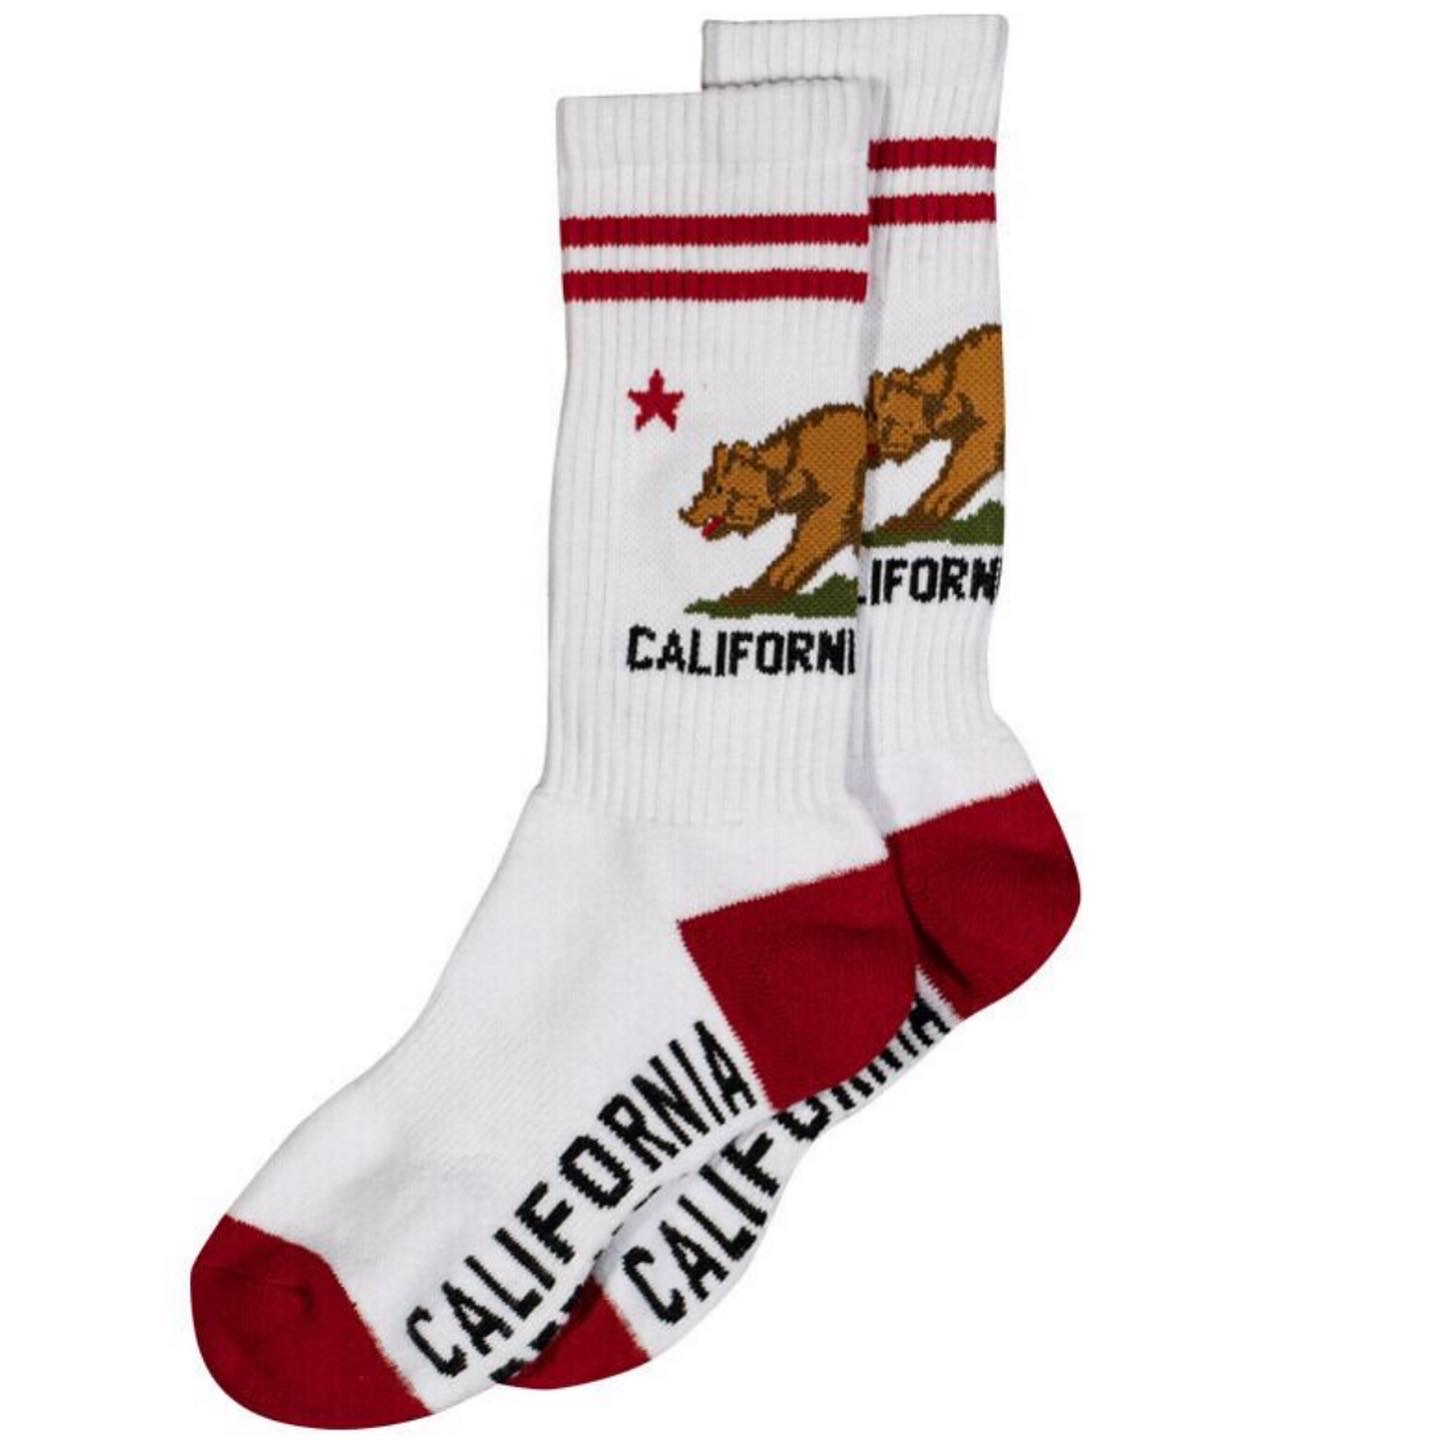 カリフォルニアリパブリックの靴下に新色追加！